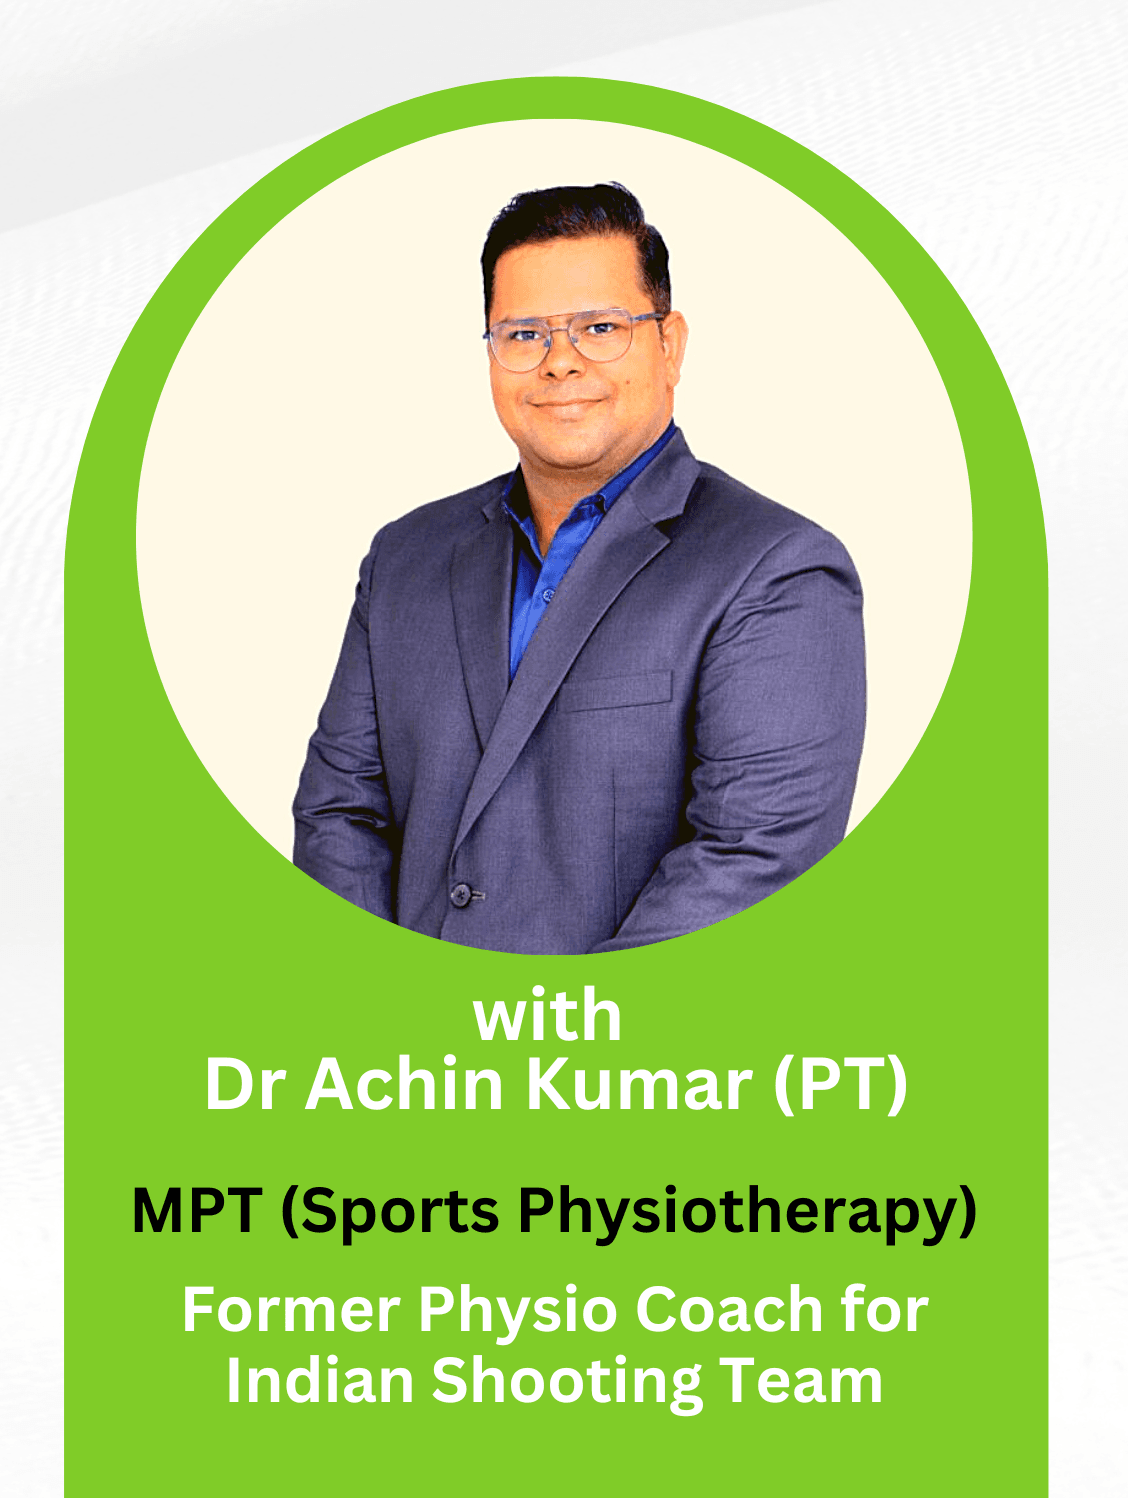 Dr. Achin Kumar